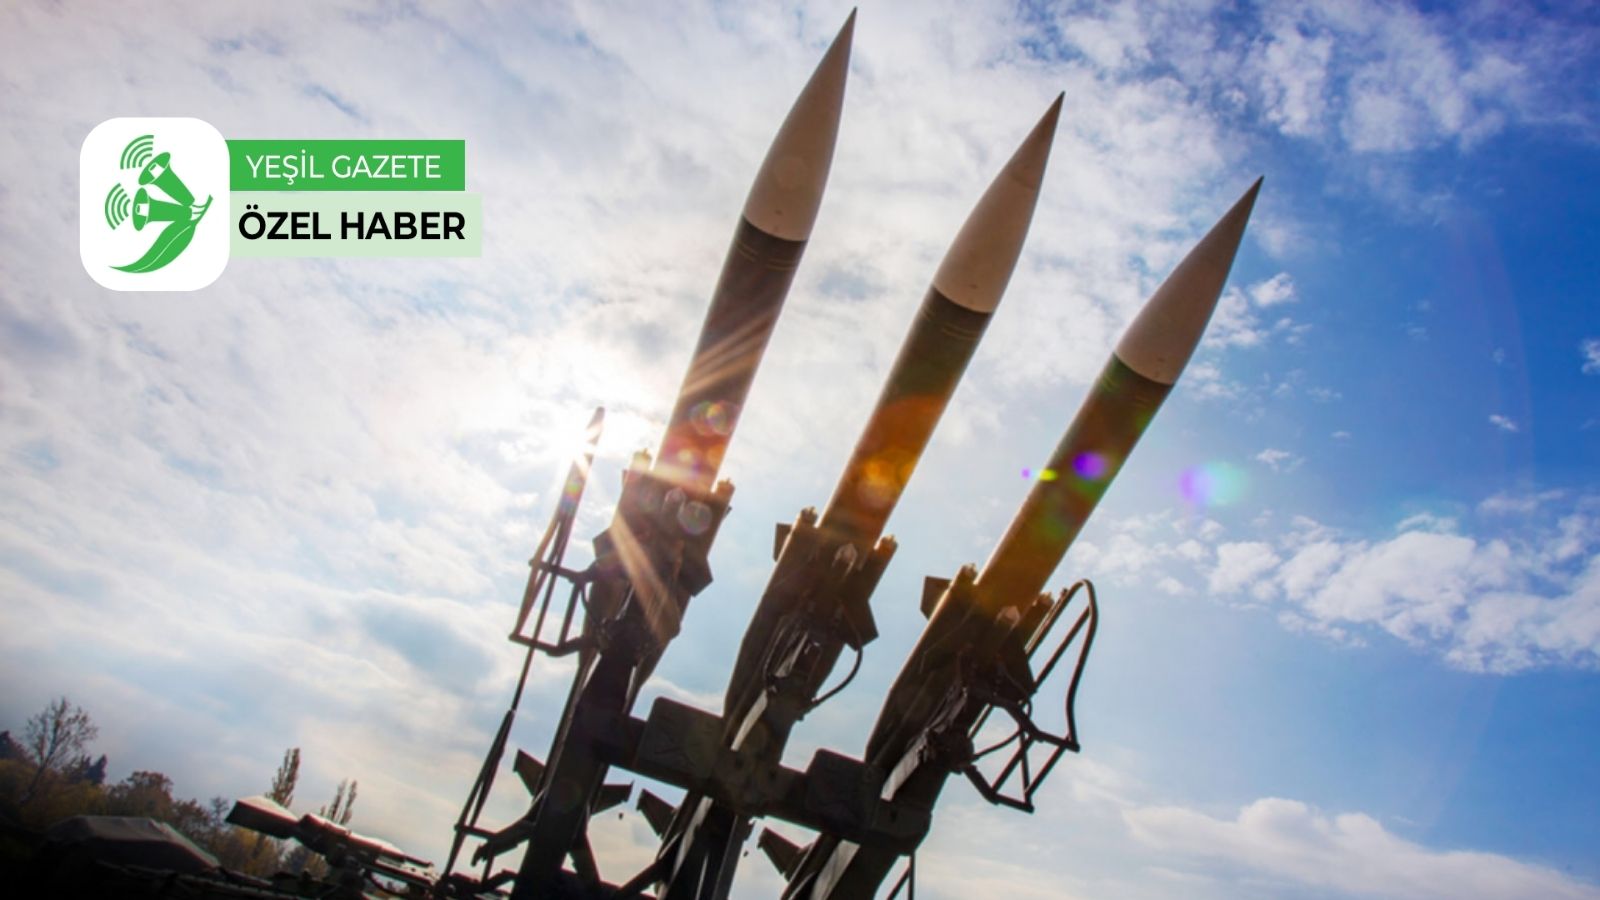 50 Ulke Onayladi Nukleer Silahlarin Yasaklanmasi Anlasmasi 22 Ocak Ta Yururluge Girecek Yesil Gazete